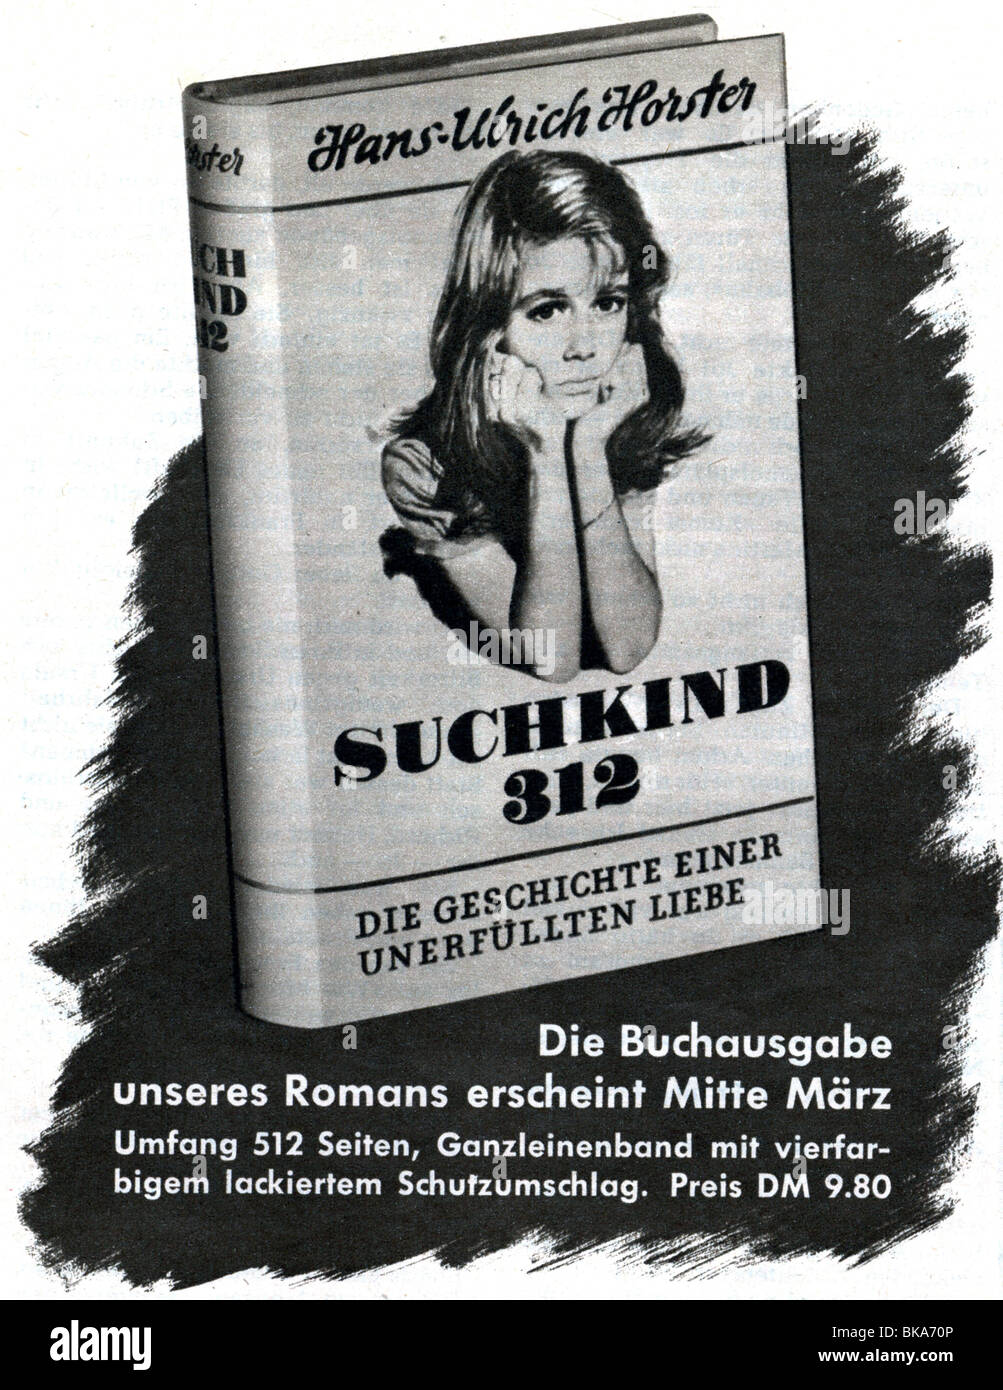 Pubblicità, letteratura, romanzo 'Suchkind 312' di Hans-Ulrich Horster, pubblicità nella rivista 'Hör Zu', numero 30, 1955, Foto Stock